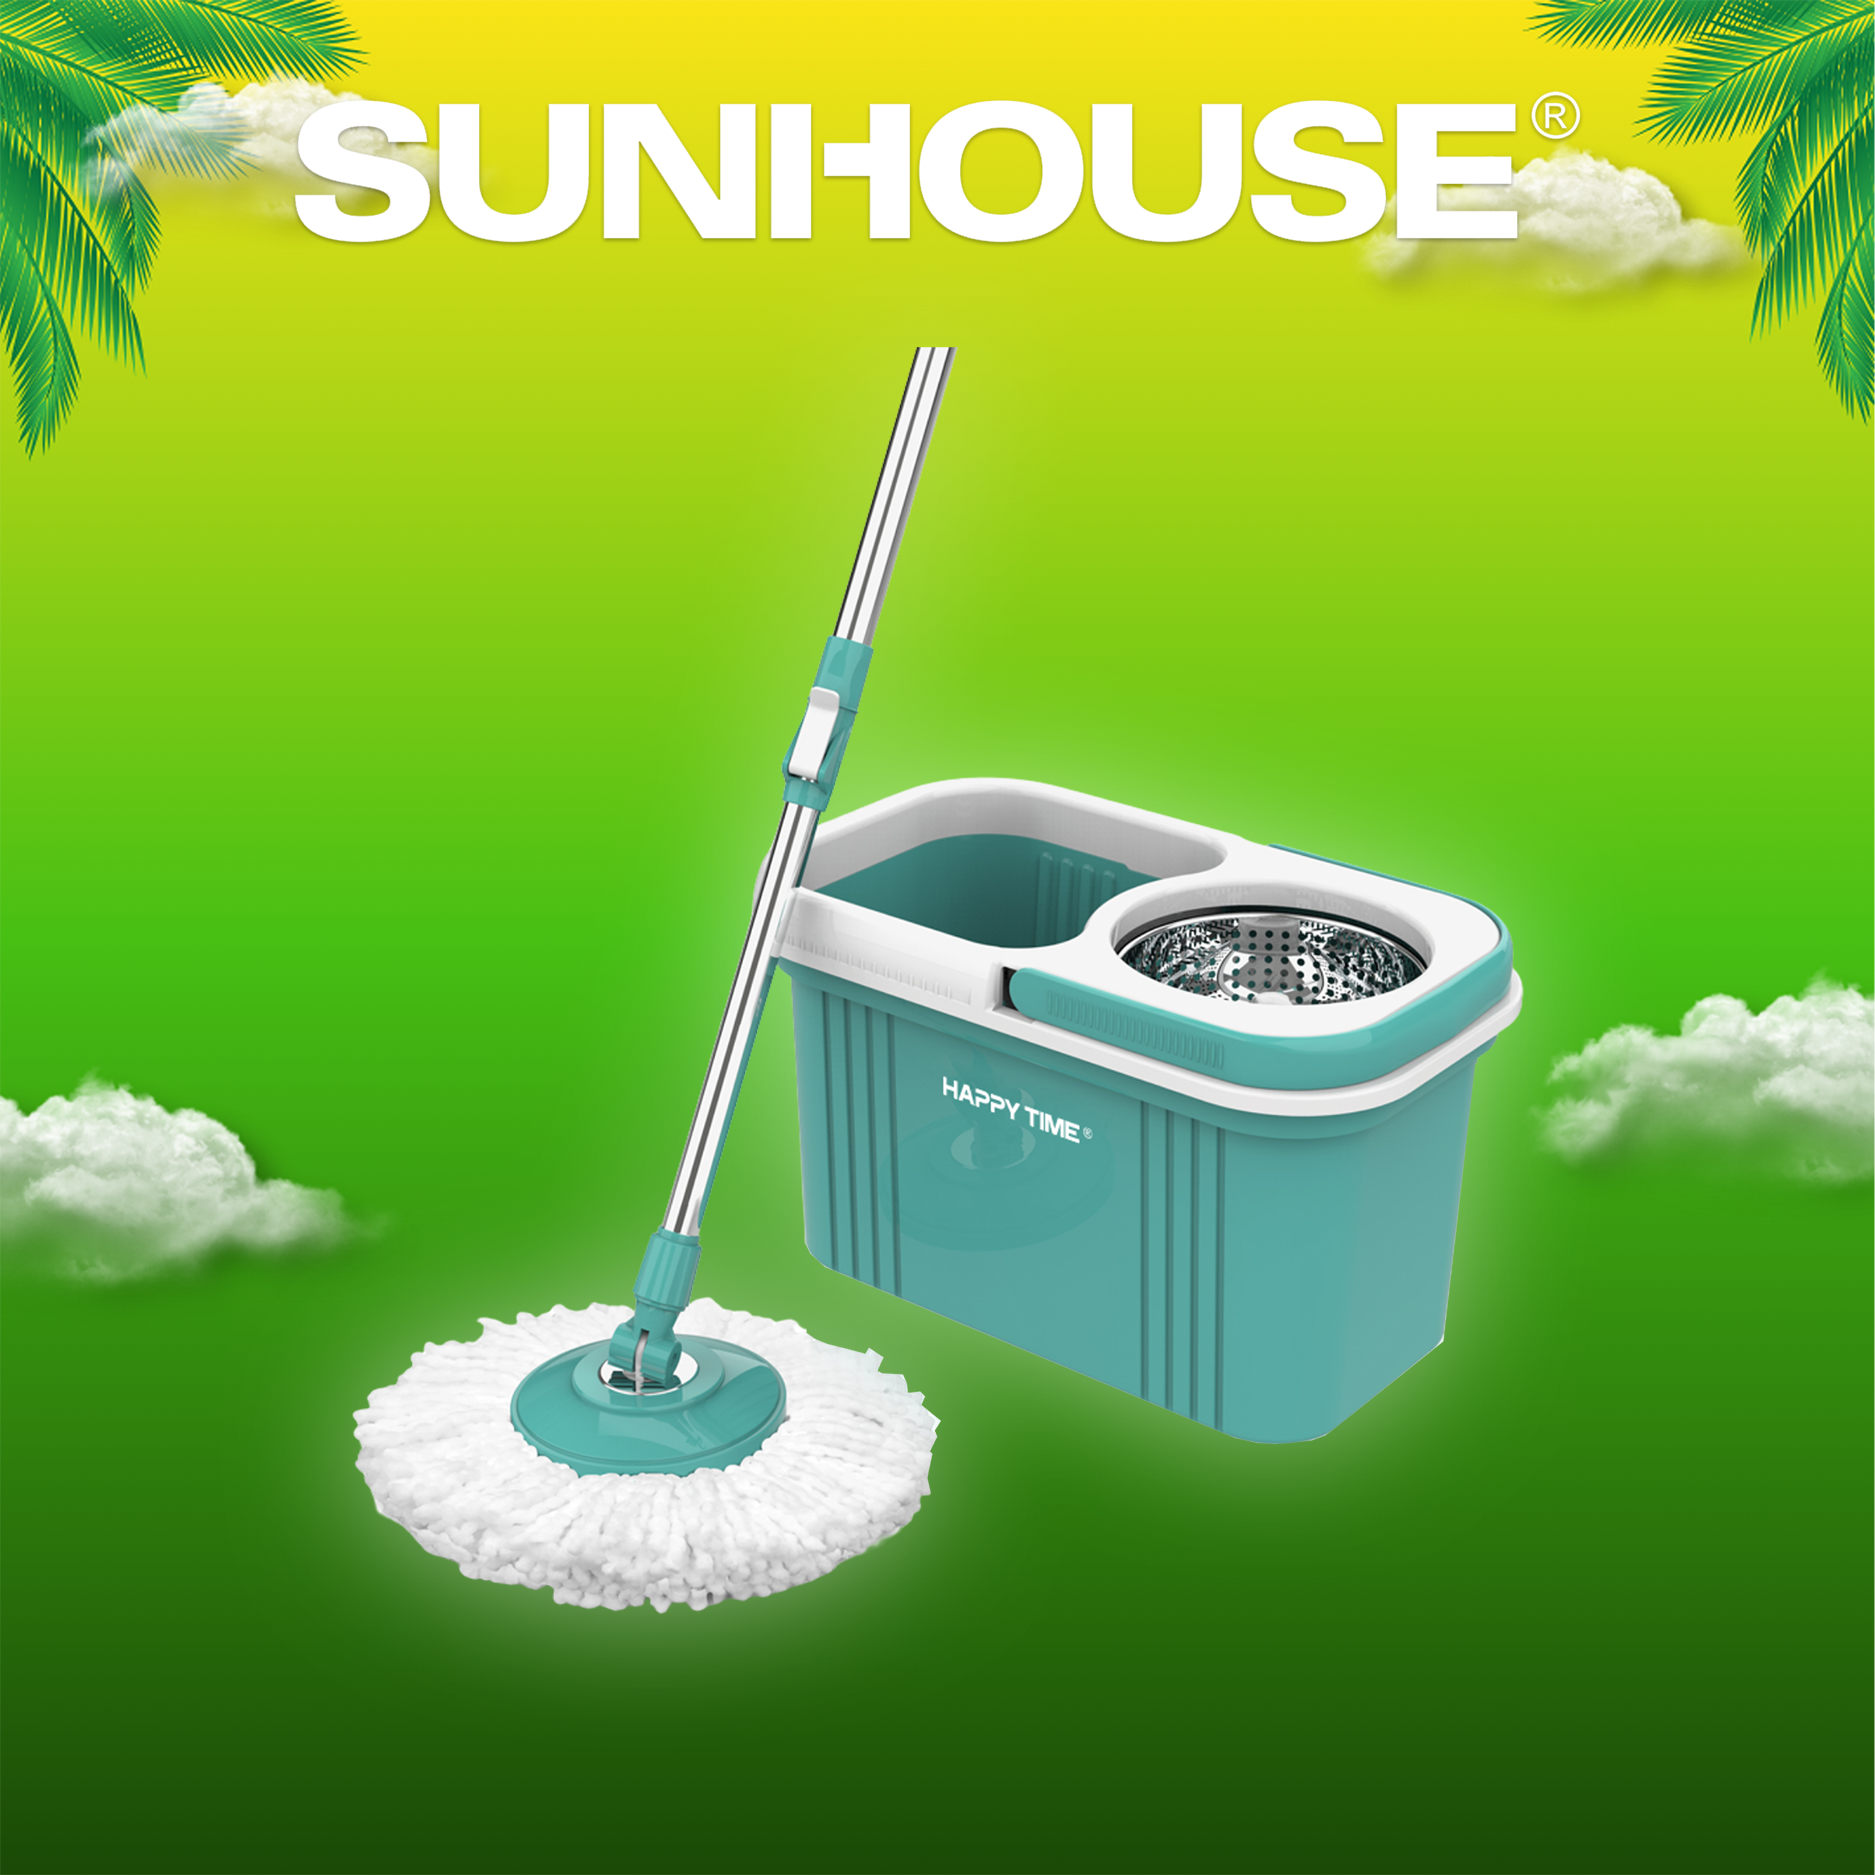 Bộ lau nhà Sunhouse Happy Time KH-CL330S, Chổi lau nhà, Cây lau nhà, Chất liệu nhựa siêu bền, Xoay 360 độ